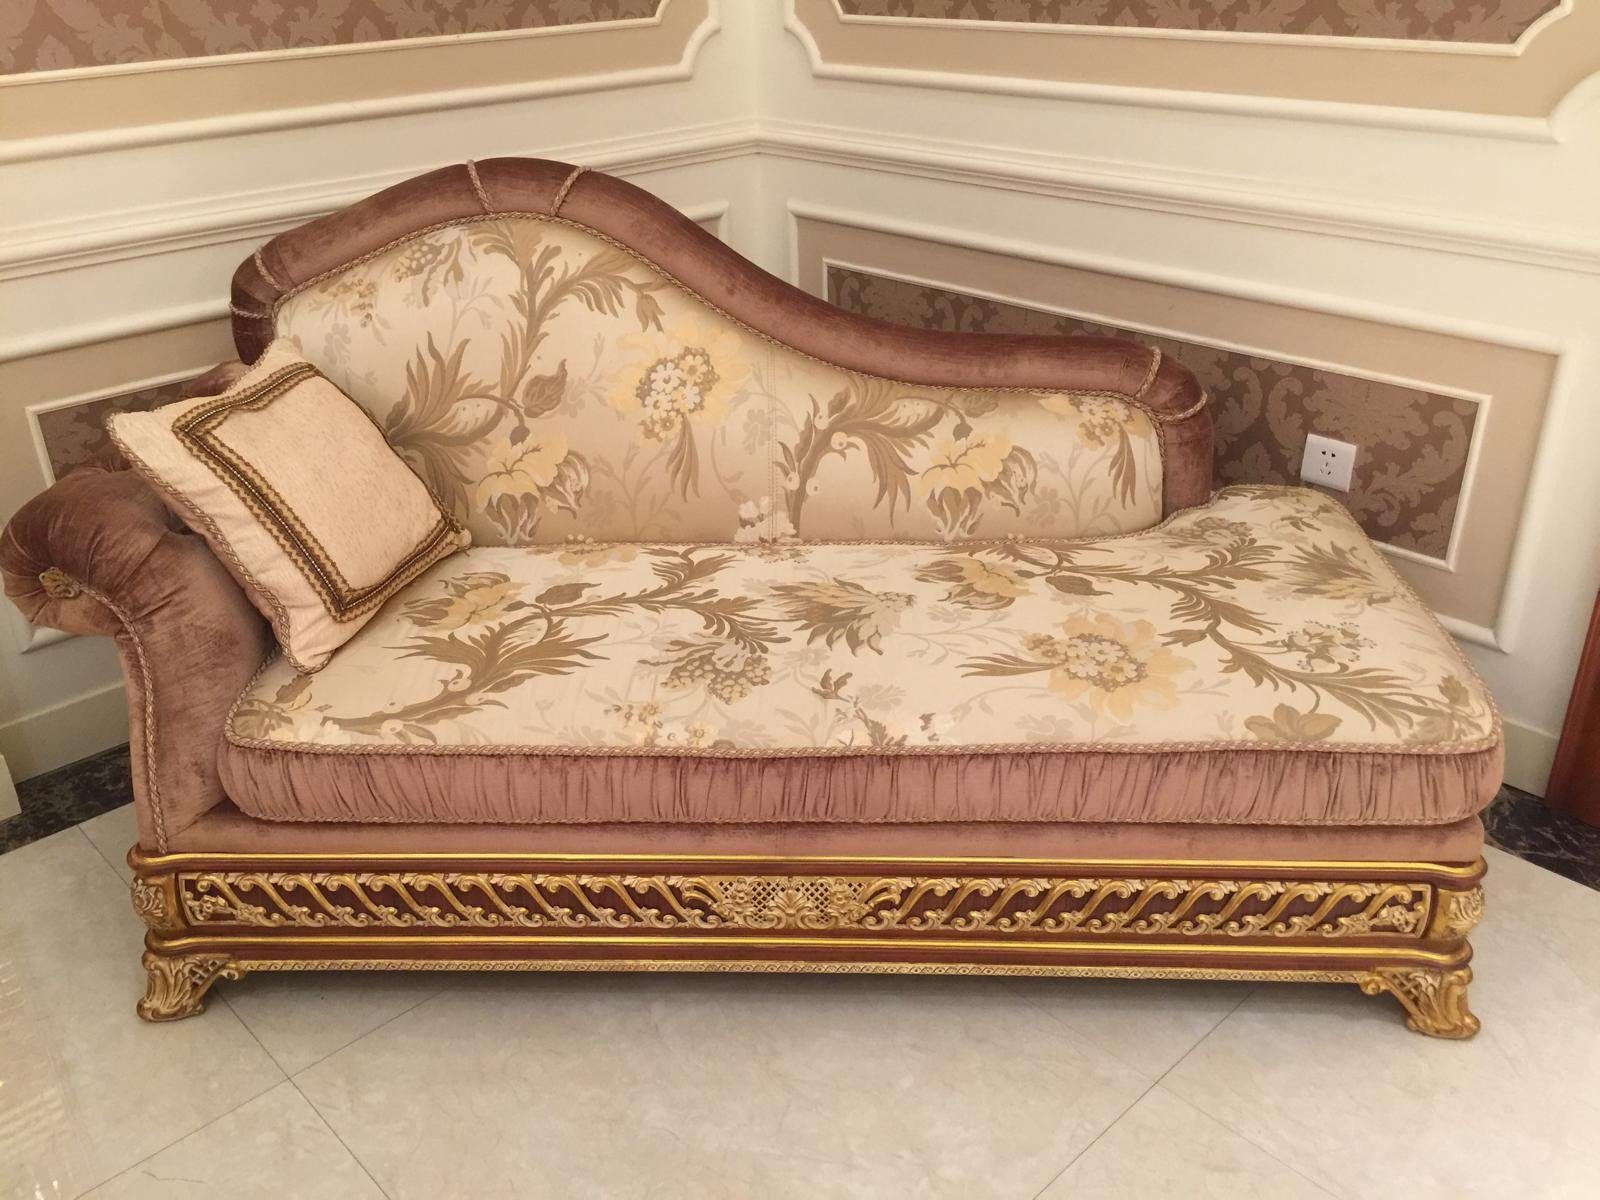 JVmoebel Chaiselongue, Chaiselongues Antik Stil Sofa Liege Textil Barock  Rokoko Couch Liegen Chaise Neu online kaufen | OTTO